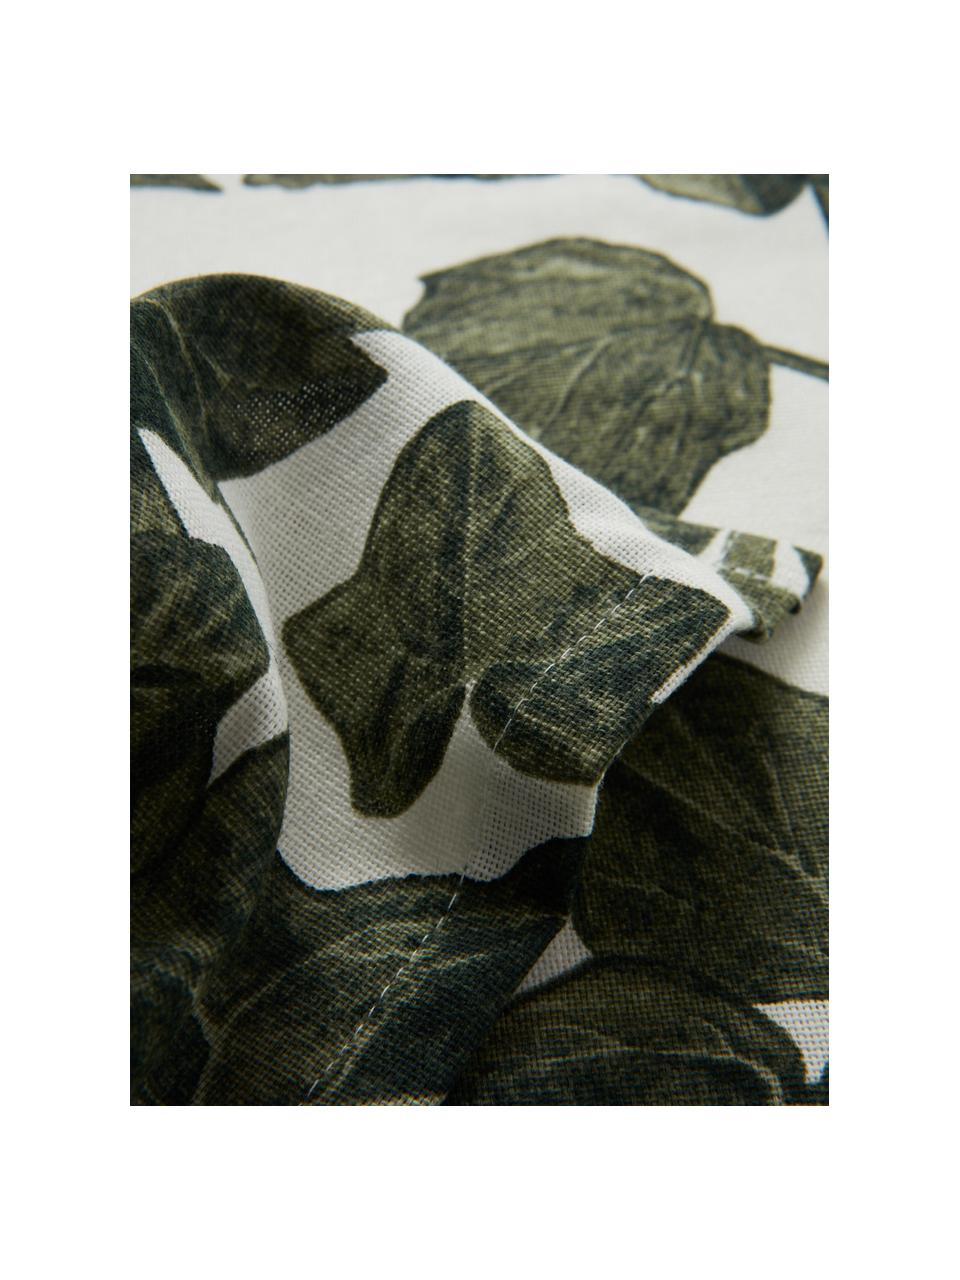 Tischdecke Ivy, verschiedene Größen, 100 % Baumwolle, Dunkelgrün, Schwarz, Off White, 6-8 Personen (L 250 x B 145 cm)